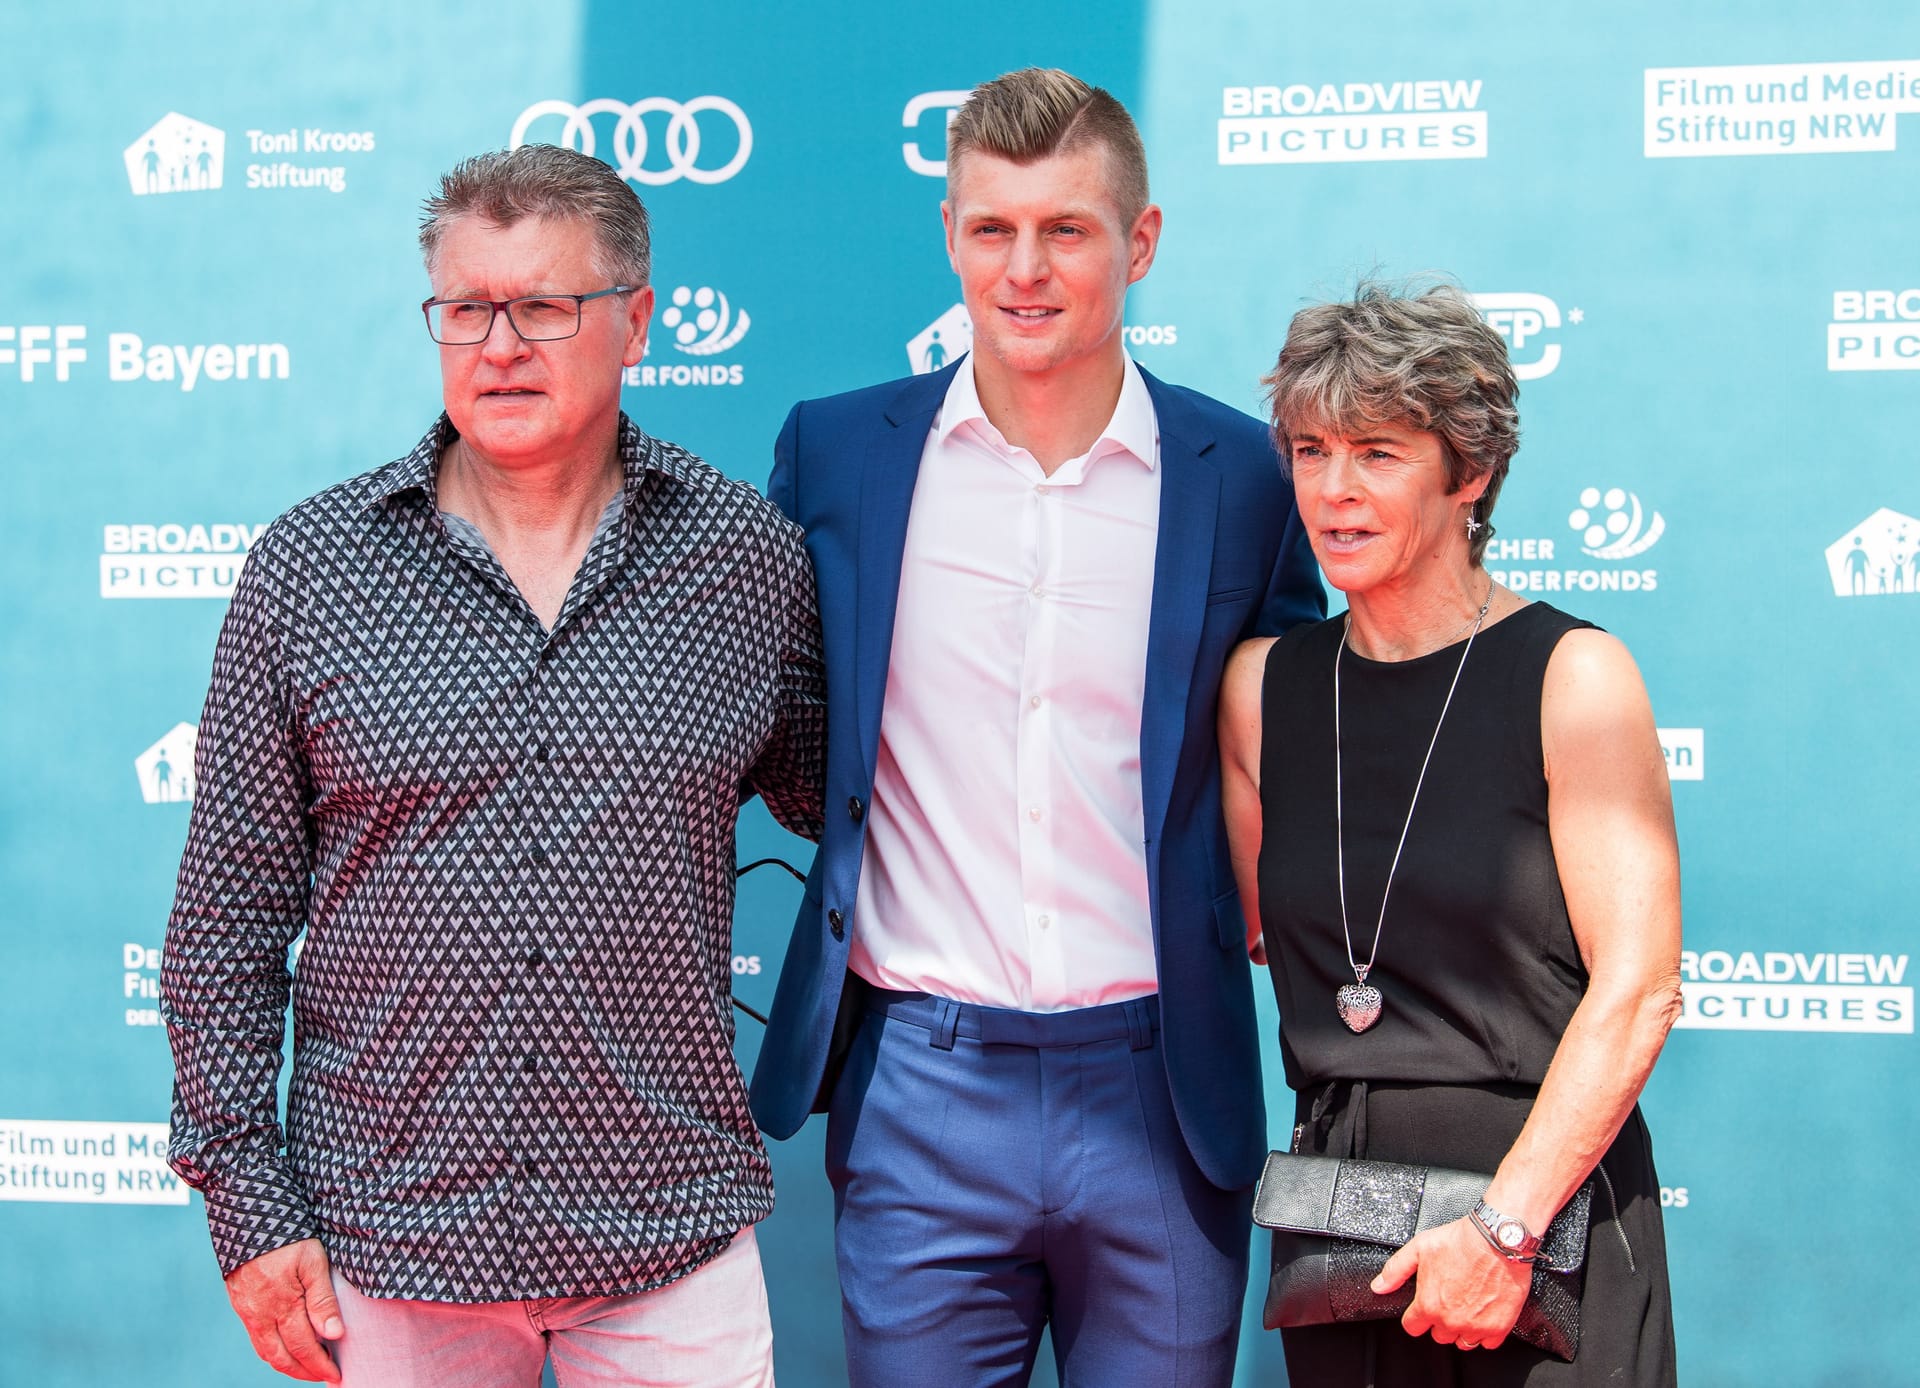 Toni Kroos zur Premiere des Films "Kroos" mit seinen Eltern Roland und Birgit Kroos am 30. Juni 2019 in Köln